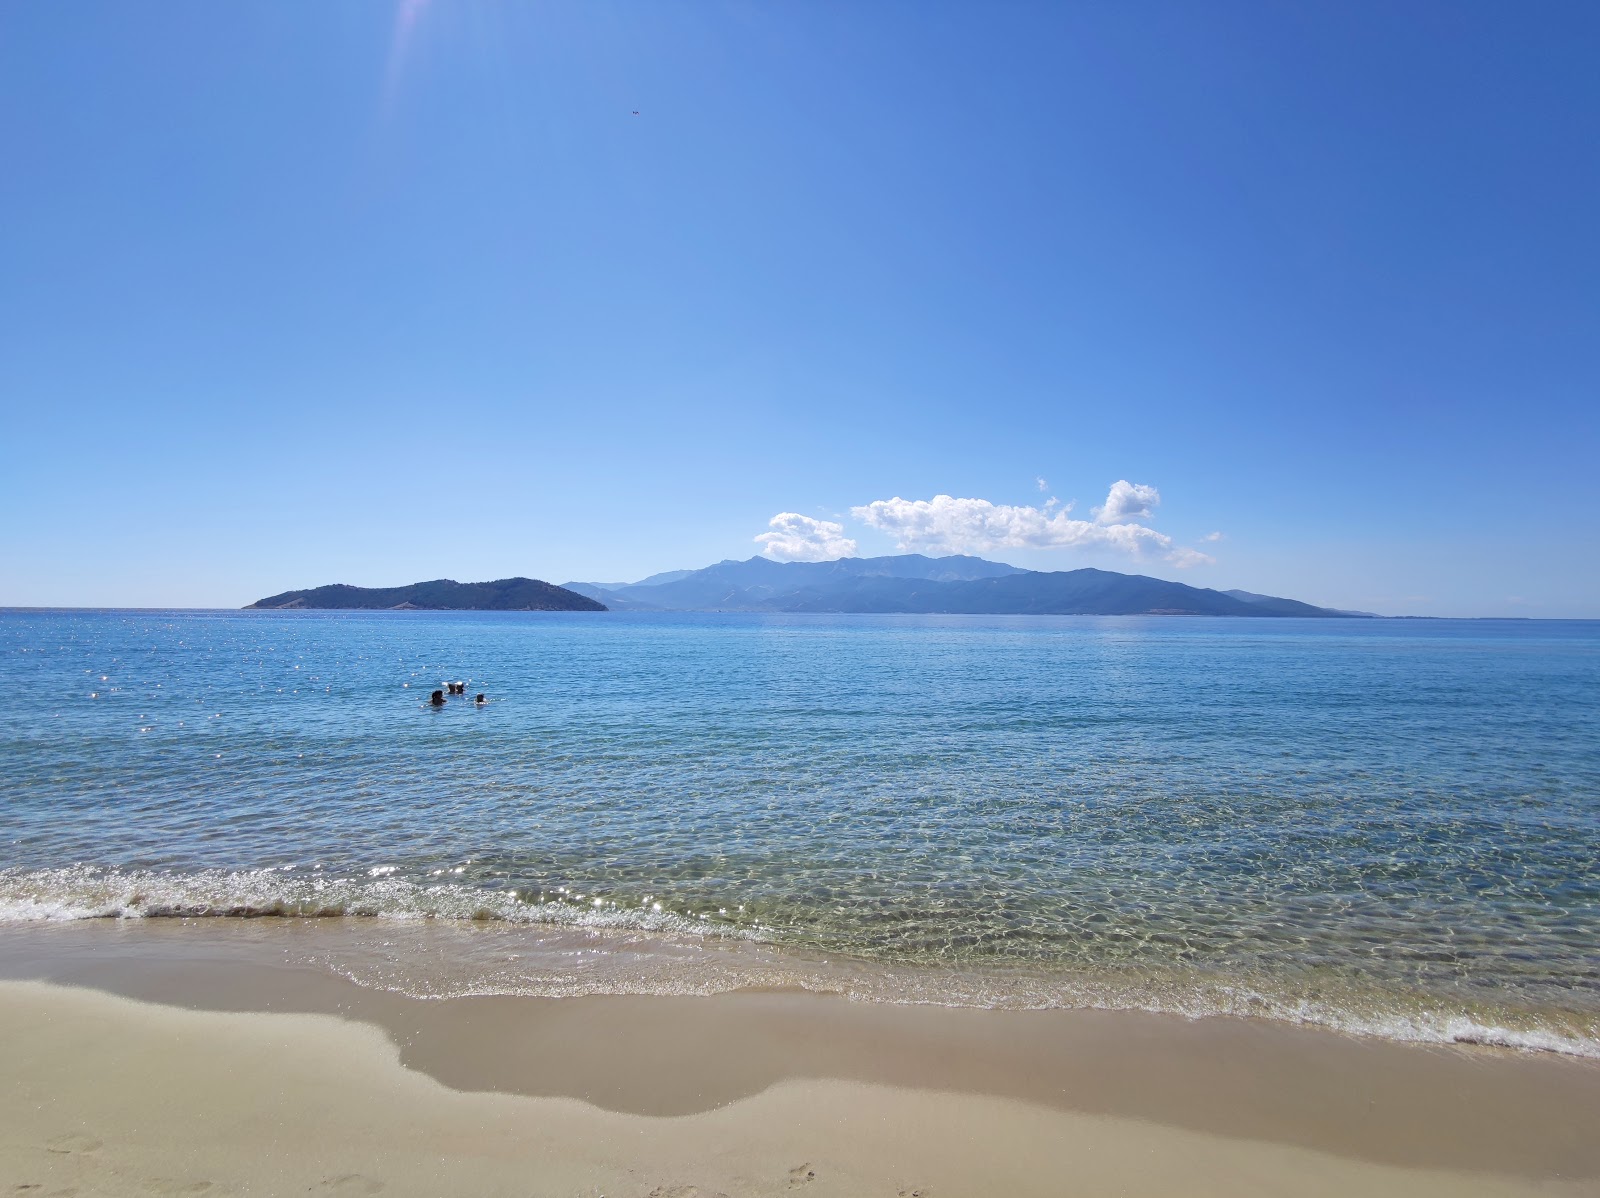 Keramoti beach'in fotoğrafı parlak ince kum yüzey ile